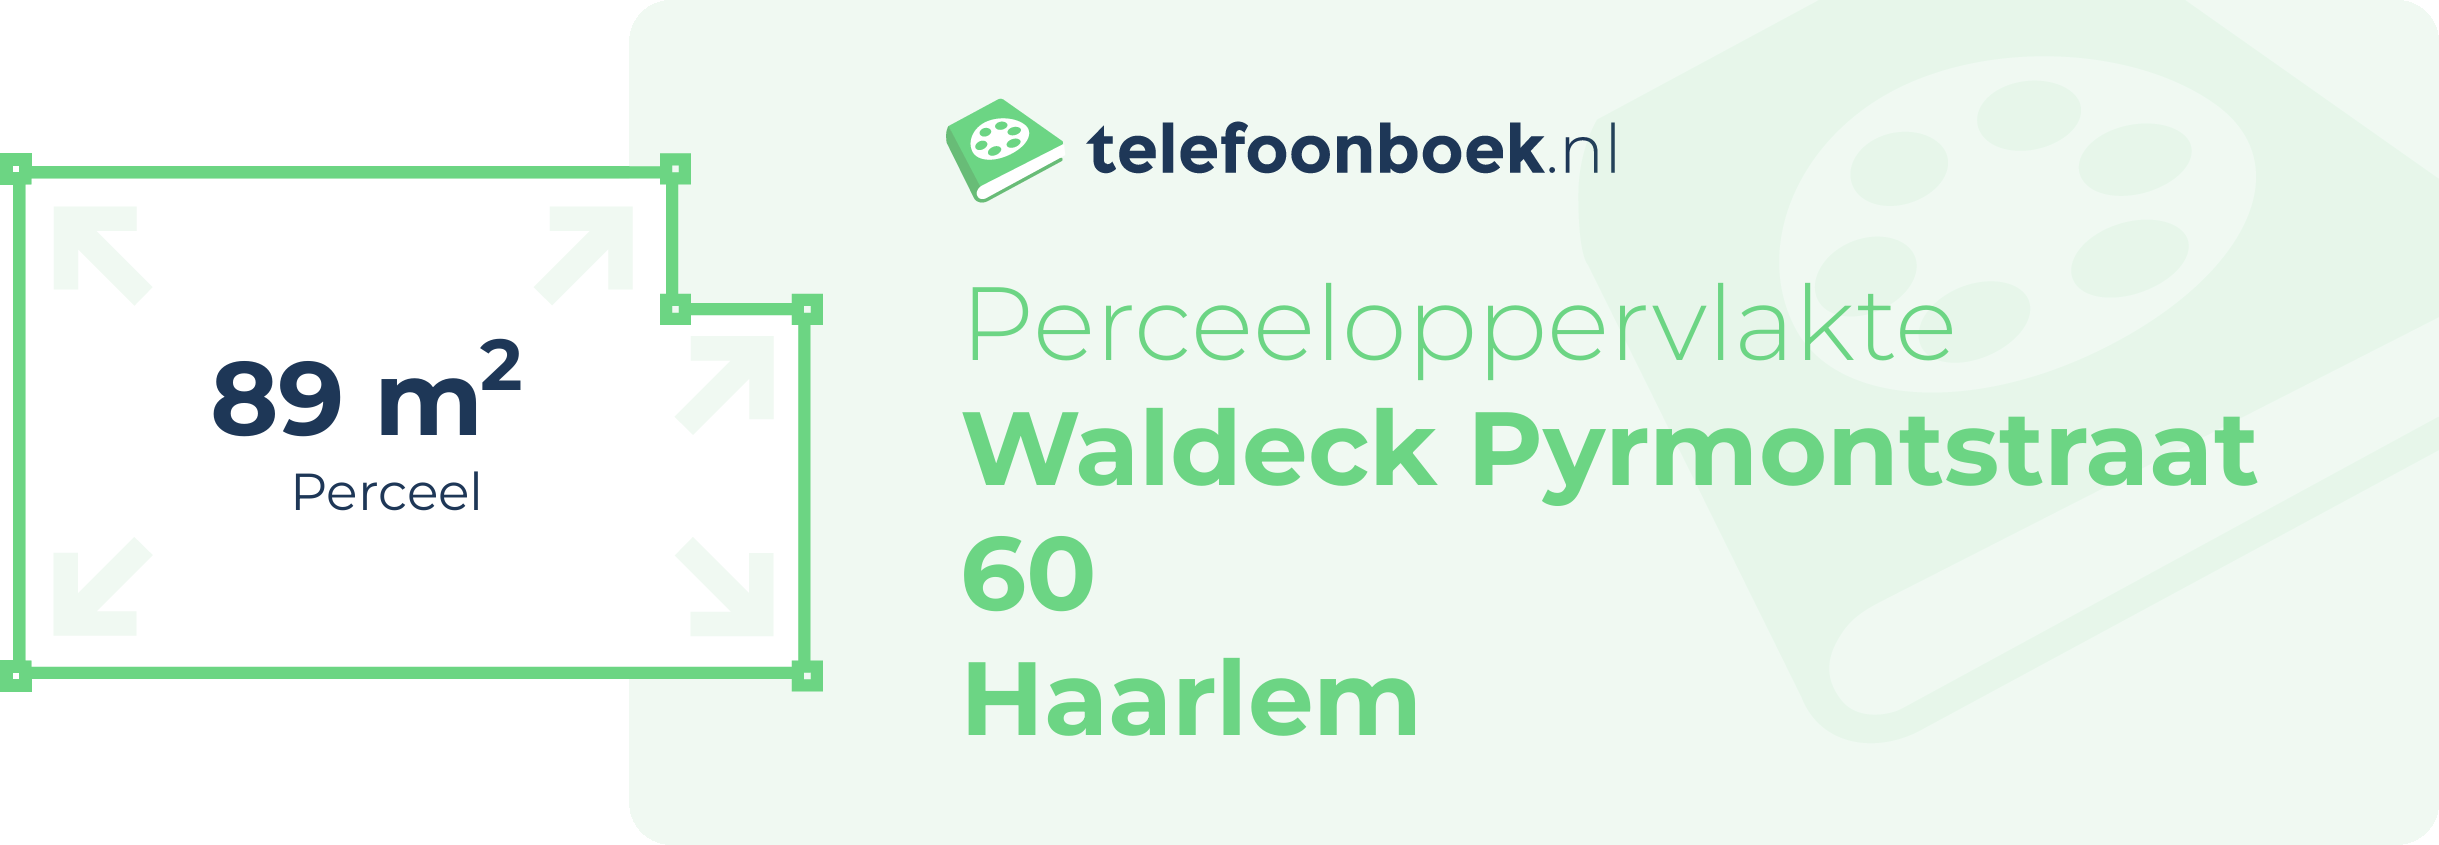 Perceeloppervlakte Waldeck Pyrmontstraat 60 Haarlem